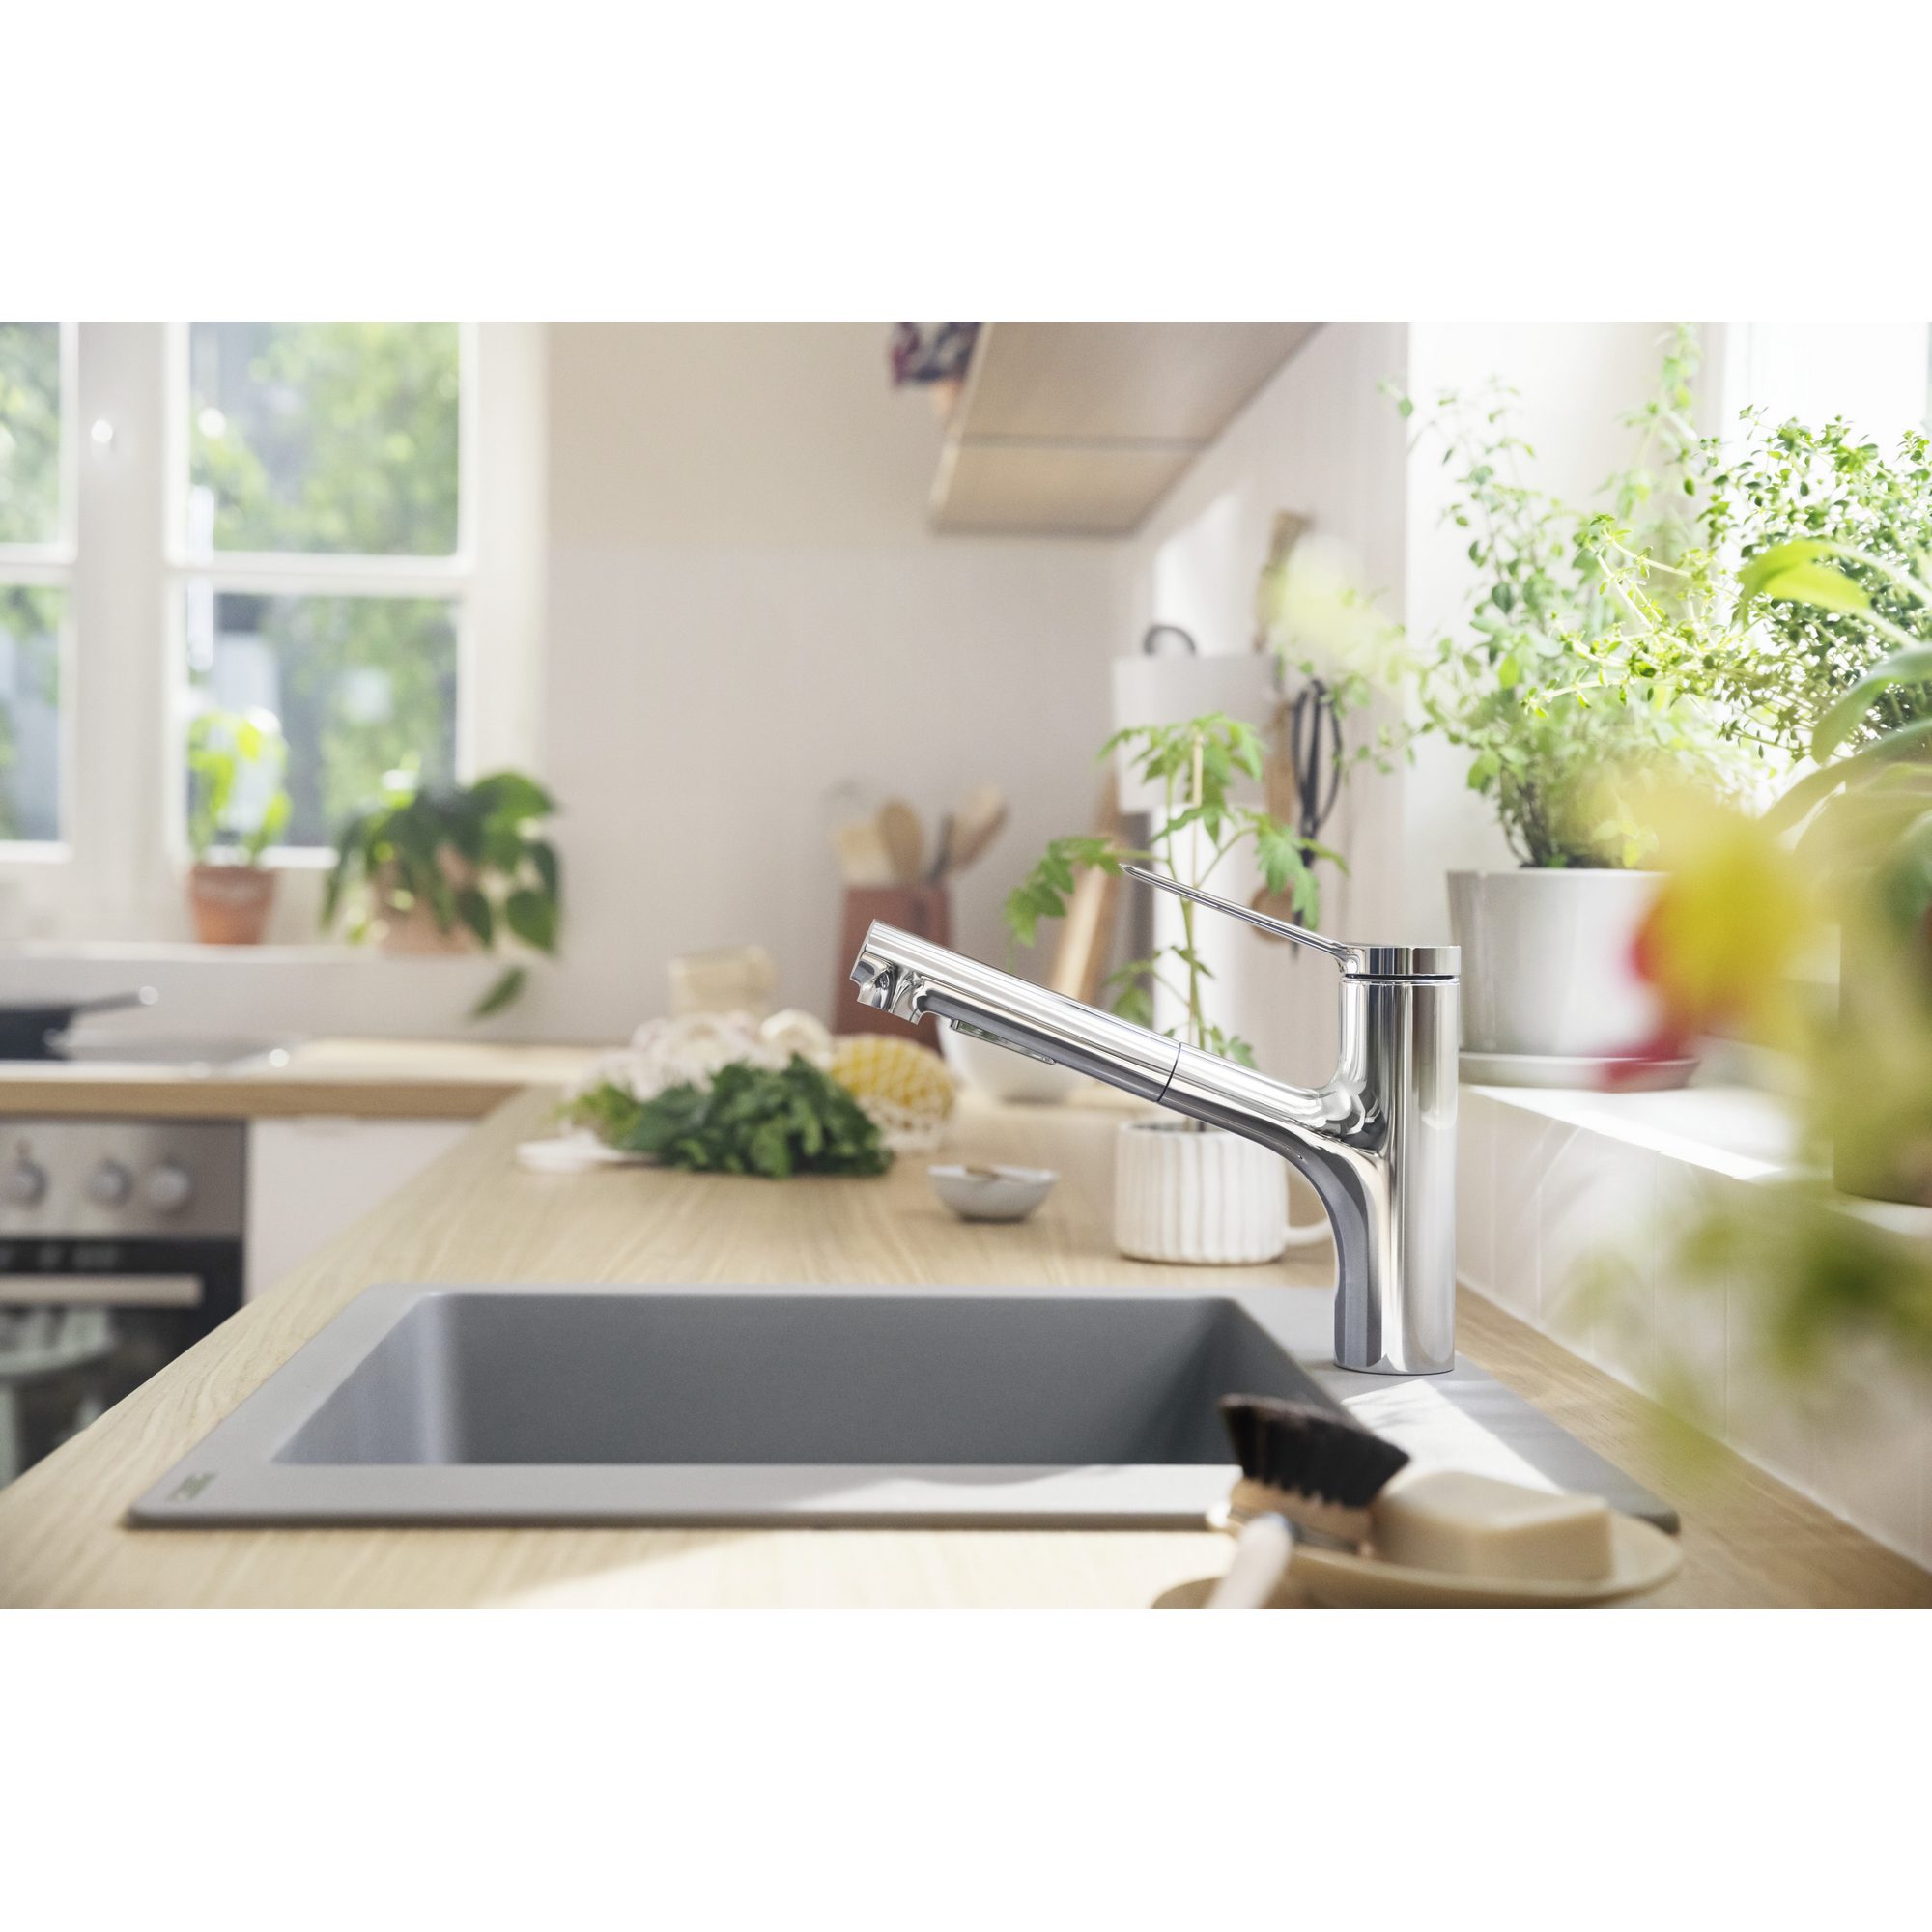 Einhebel-Küchenmischer 'Zesis M33 Eco 150' verchromt, mit Ausziehbrause + product picture